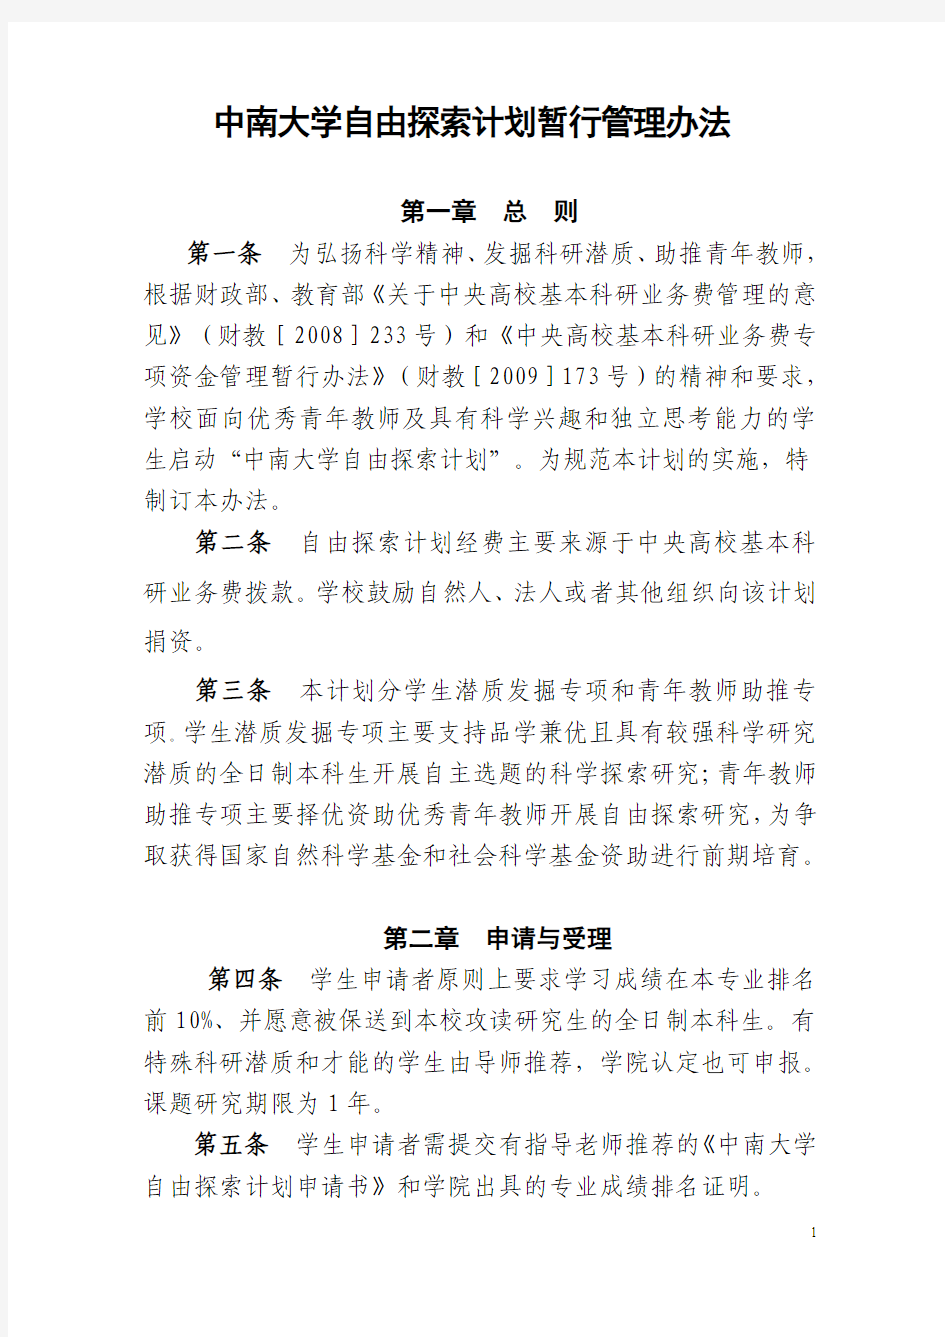 中南大学自由探索计划暂行管理办法